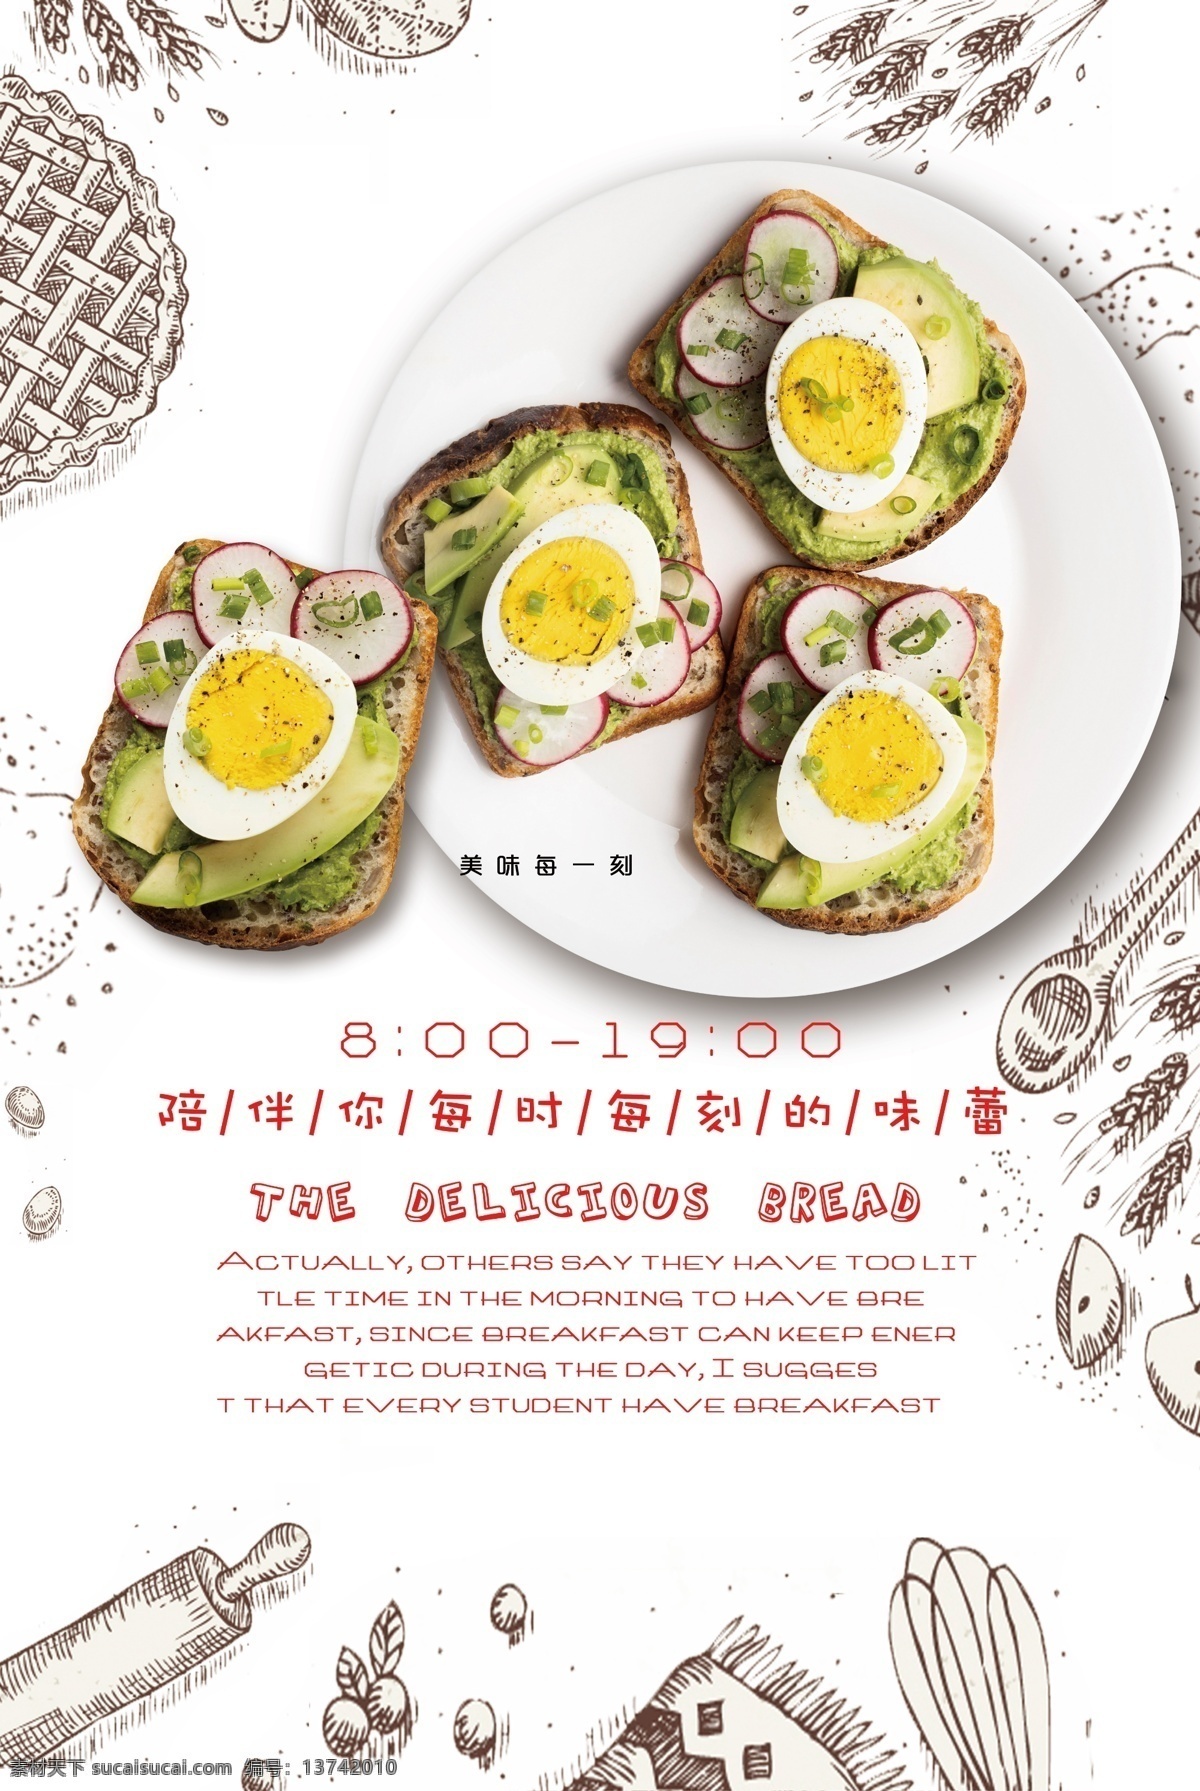 早餐图片 早餐 面包 三明治 海报 展板 写真 盘子 鸡蛋 早餐海报 早餐展板 平面设计 名片